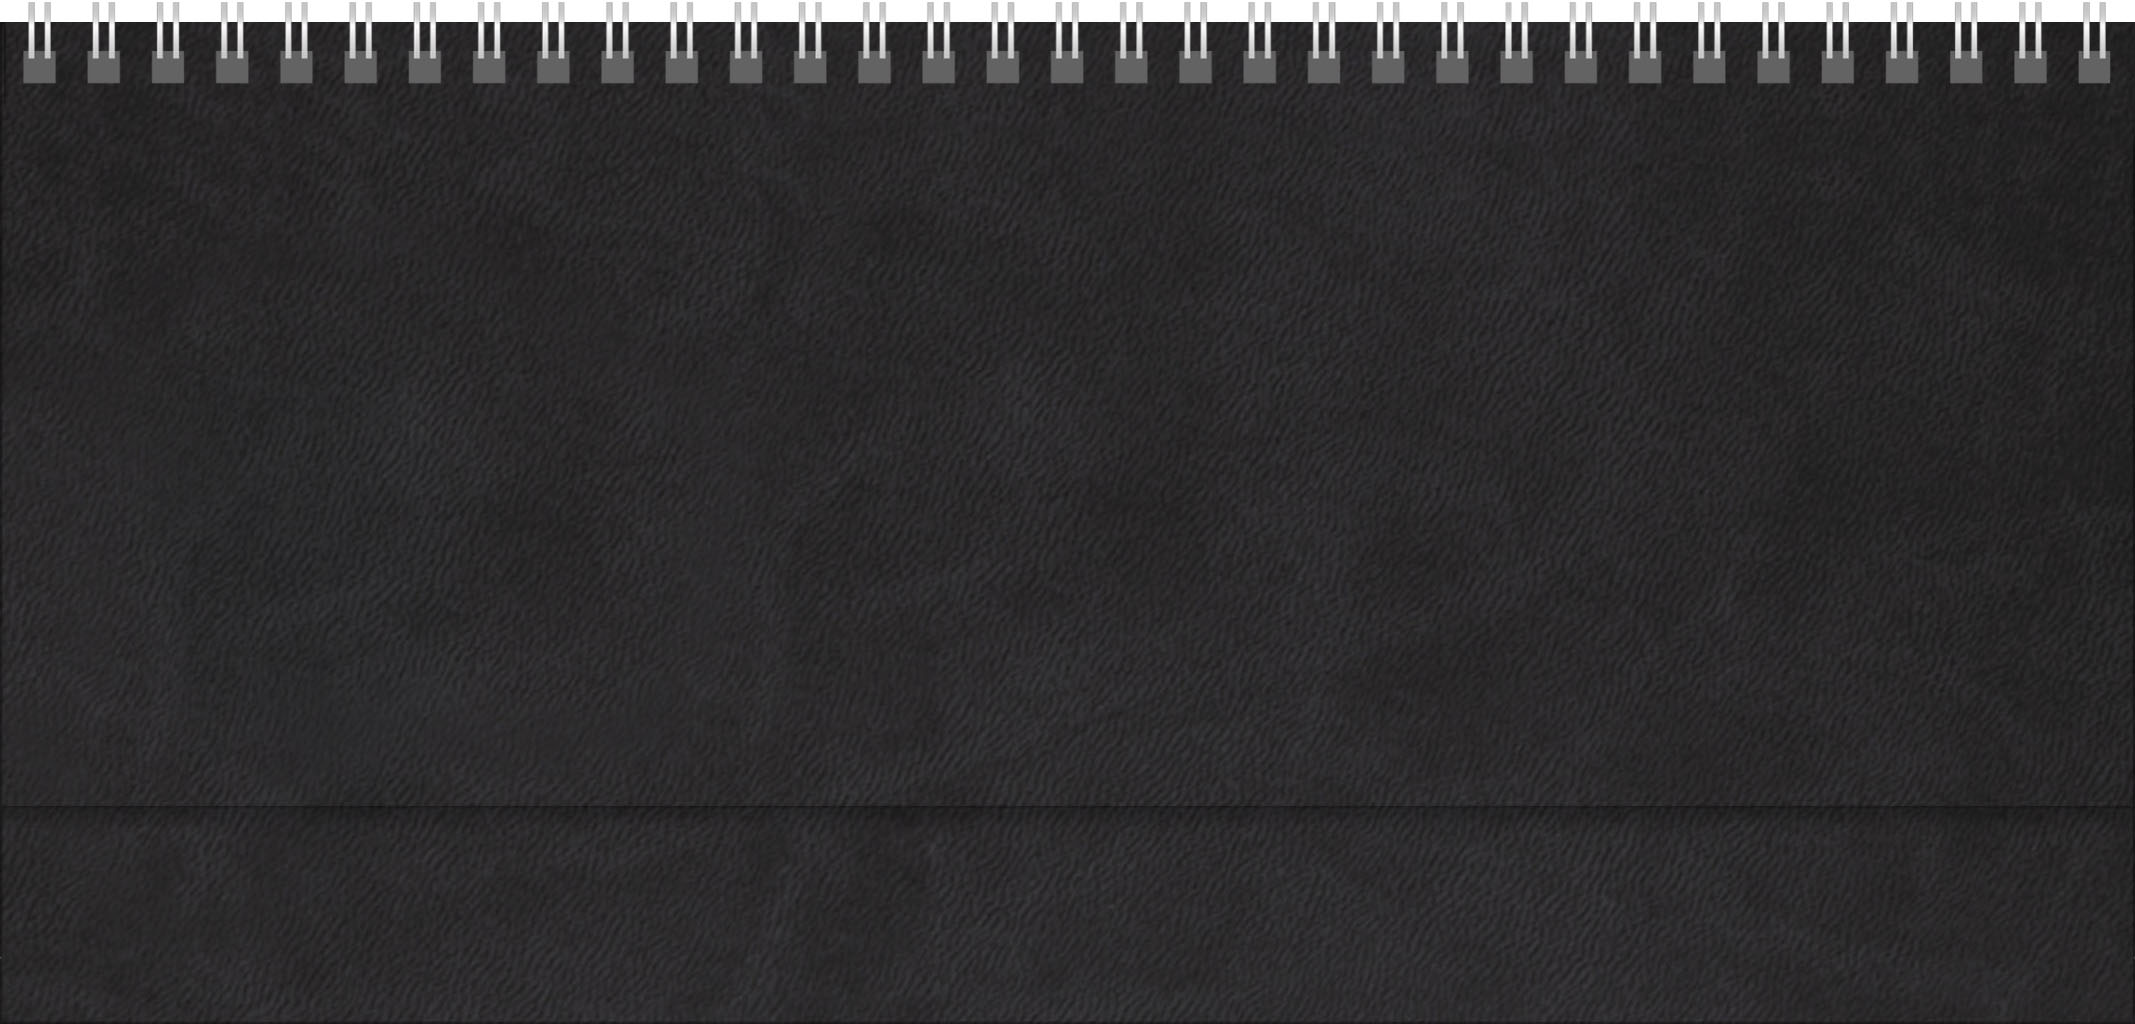 Tischquerkalender Teneriffa
Soft-Touch schwarz
1 Woche / 2 Seiten
4-spr. DE-GB-FR-ES grau/blau